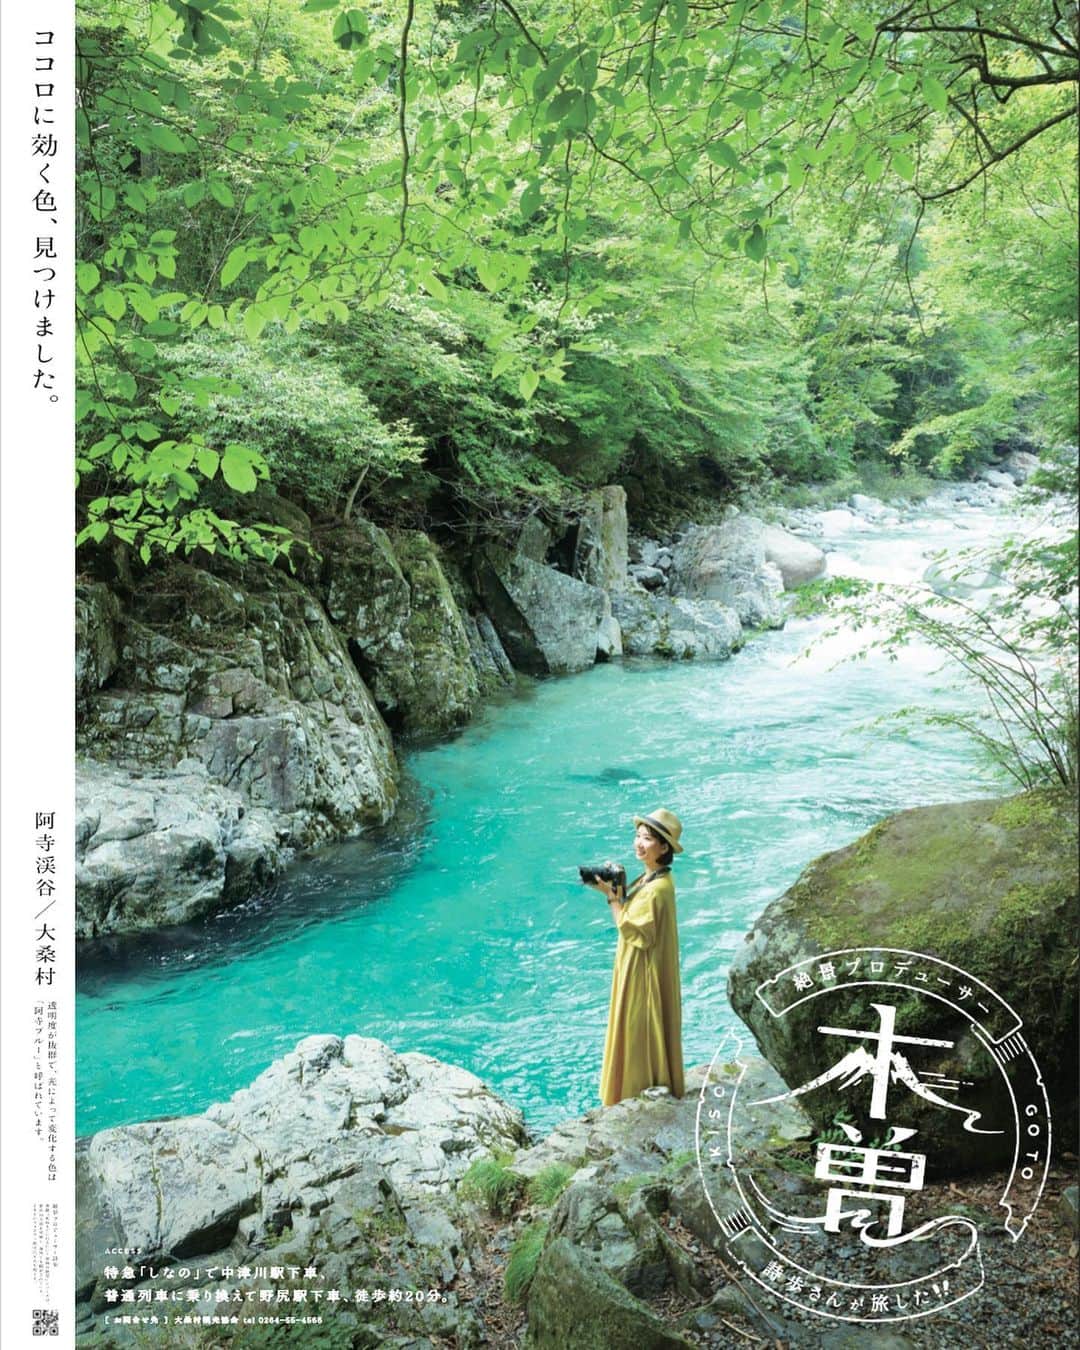 詩歩のインスタグラム：「お知らせです！  このたびJR東海さんの木曽観光ポスターに起用いただきました✨  これまで季節をかえて何度も取材に行った木曽地域。  長野県と岐阜県にまたがる広いエリアですが、古い宿場町や大自然など、絶景がいっぱい📷  その写真は #shiho_kiso でもたくさんご紹介してきました。  今回はそんな木曽の絶景スポットで撮影してきた写真がポスターとして掲載されています。  ＜掲出場所＞ ・JR名古屋駅 ・木曽エリアのJR各駅  ＜掲出期間＞ 2023年3月〜8月ごろ  ※いずれも予定です  私もさっそくJR名古屋駅で見てきました✨立ち止まってみてくださってる方もいて、こうして多くの方にご覧いただける機会をいただけてうれしいなぁ🙏  ポスターは改札内外いろんな場所に貼られています。  名古屋駅や木曽各駅を利用する際はぜひ探してみてくださいね😌  📍JR名古屋駅 / JR Nagoya station #PR」